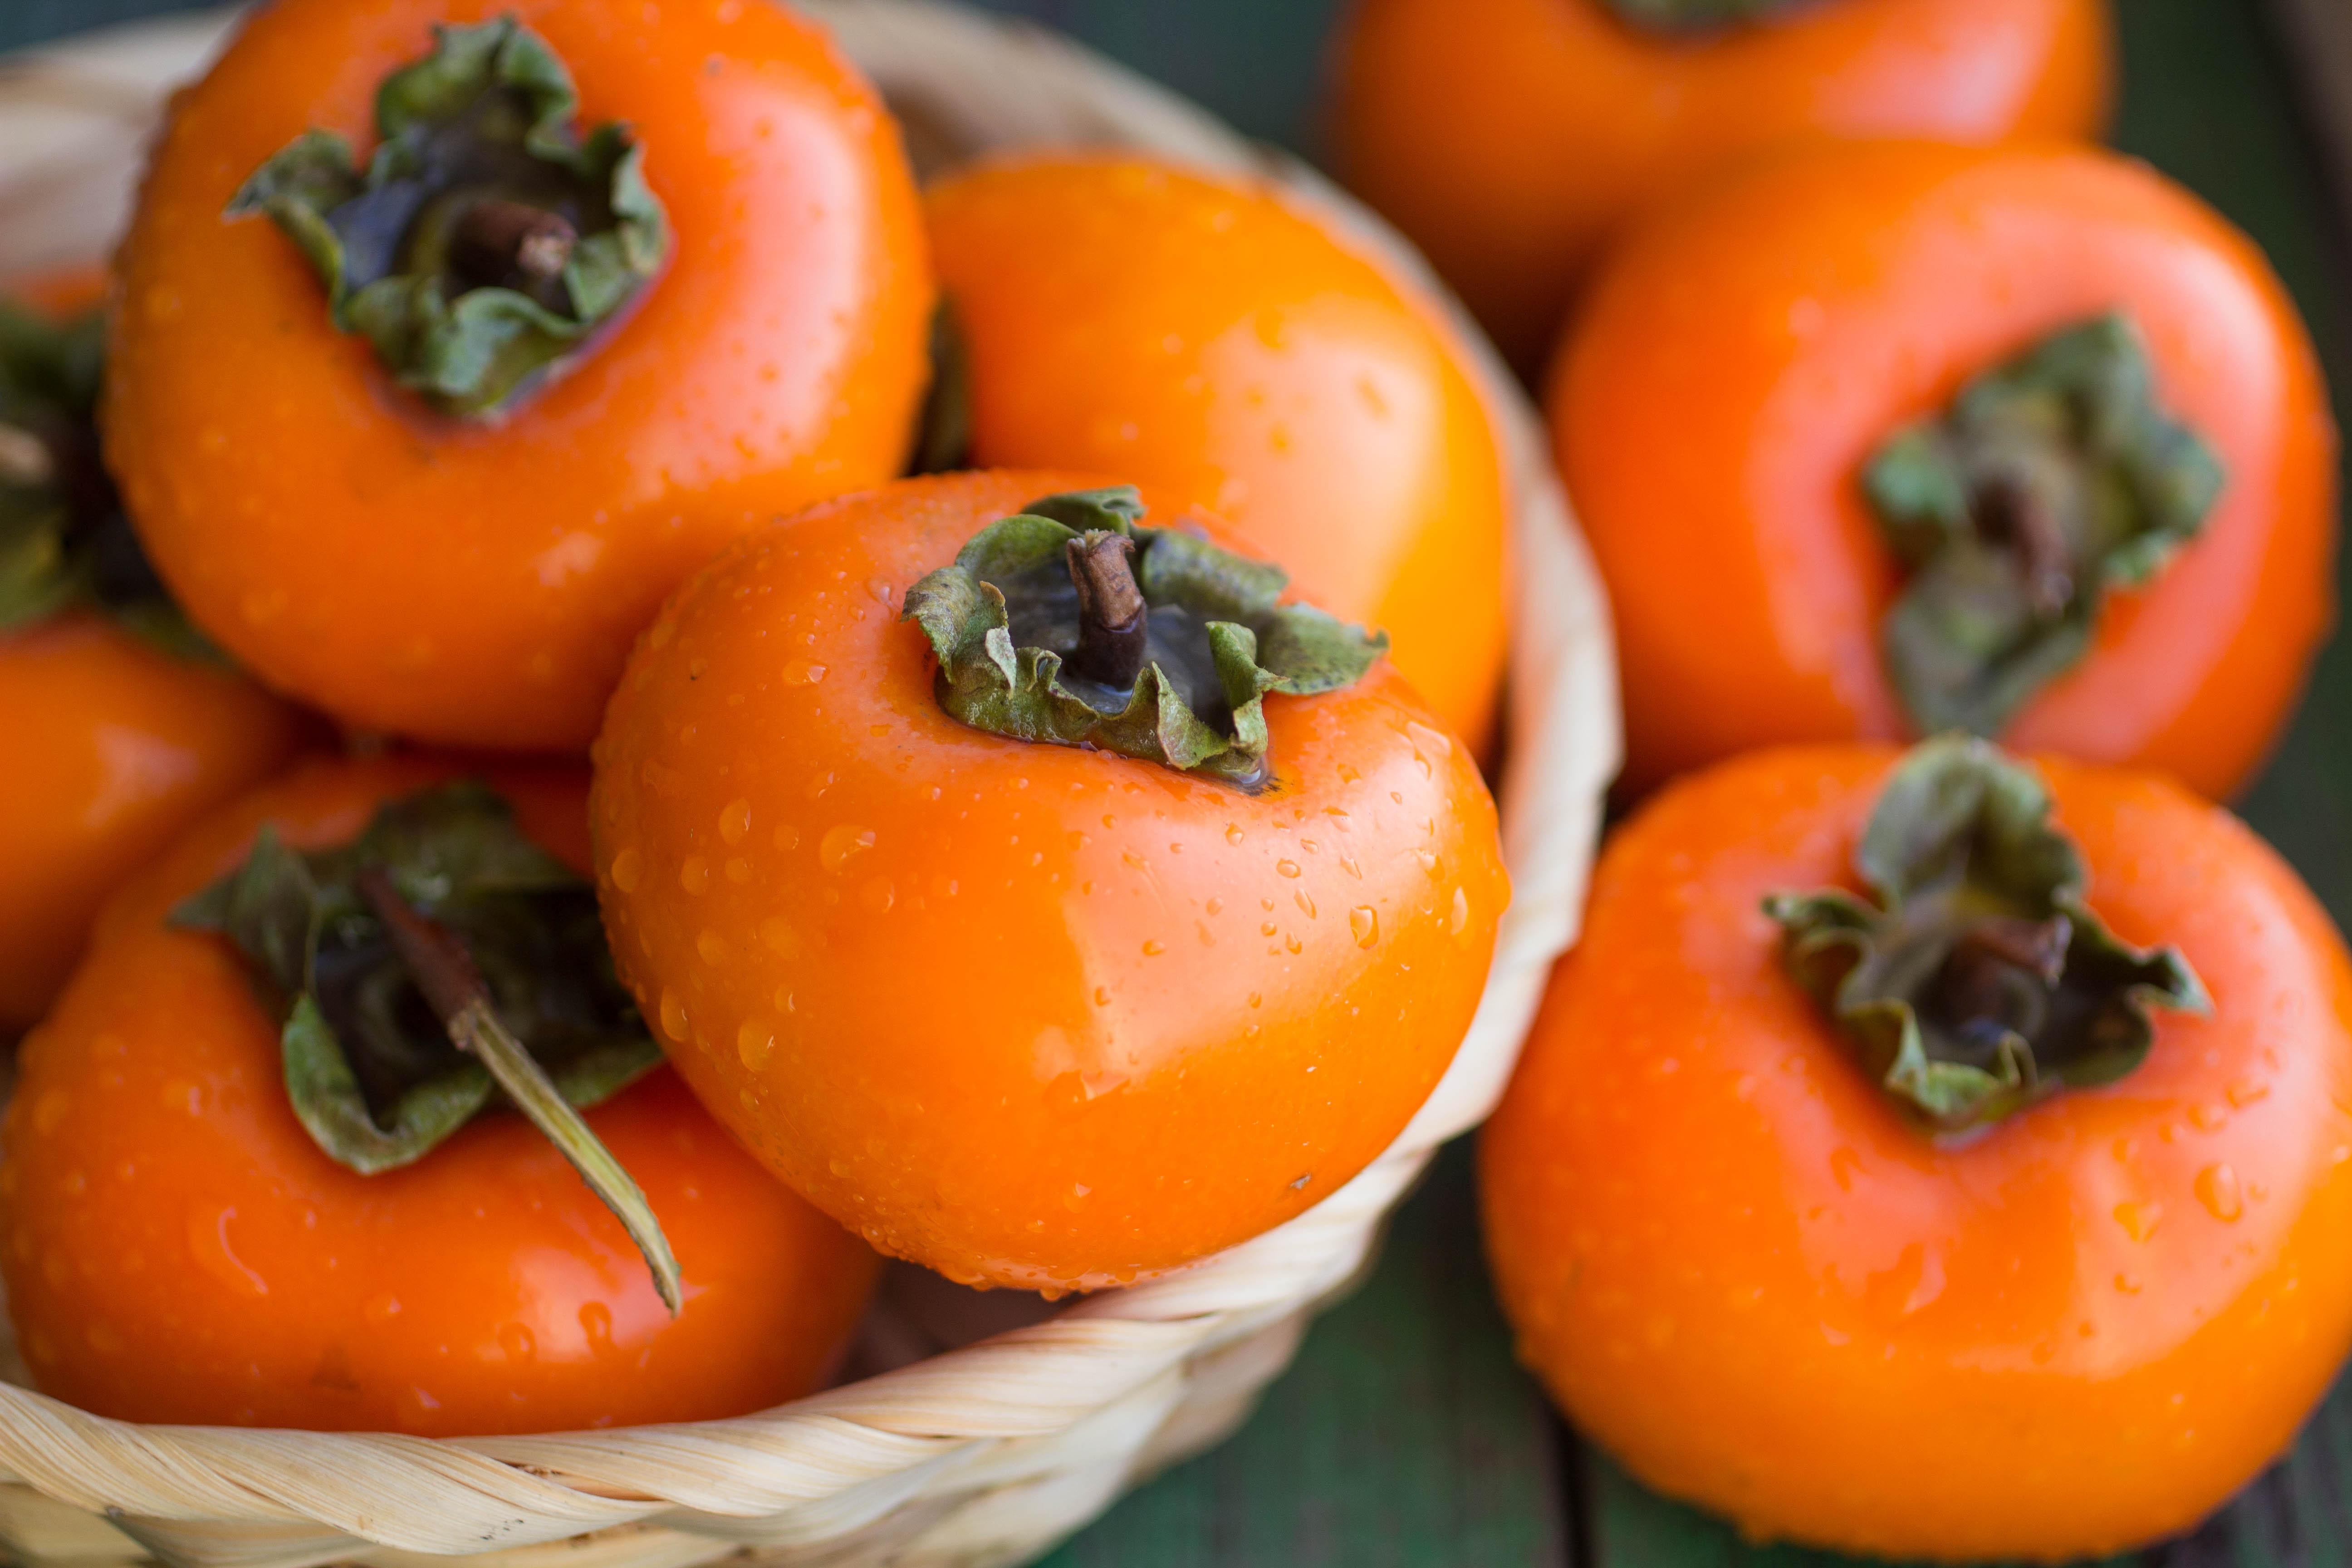 天天果园与京东生鲜发售首批新西兰脆柿 | 国际果蔬报道